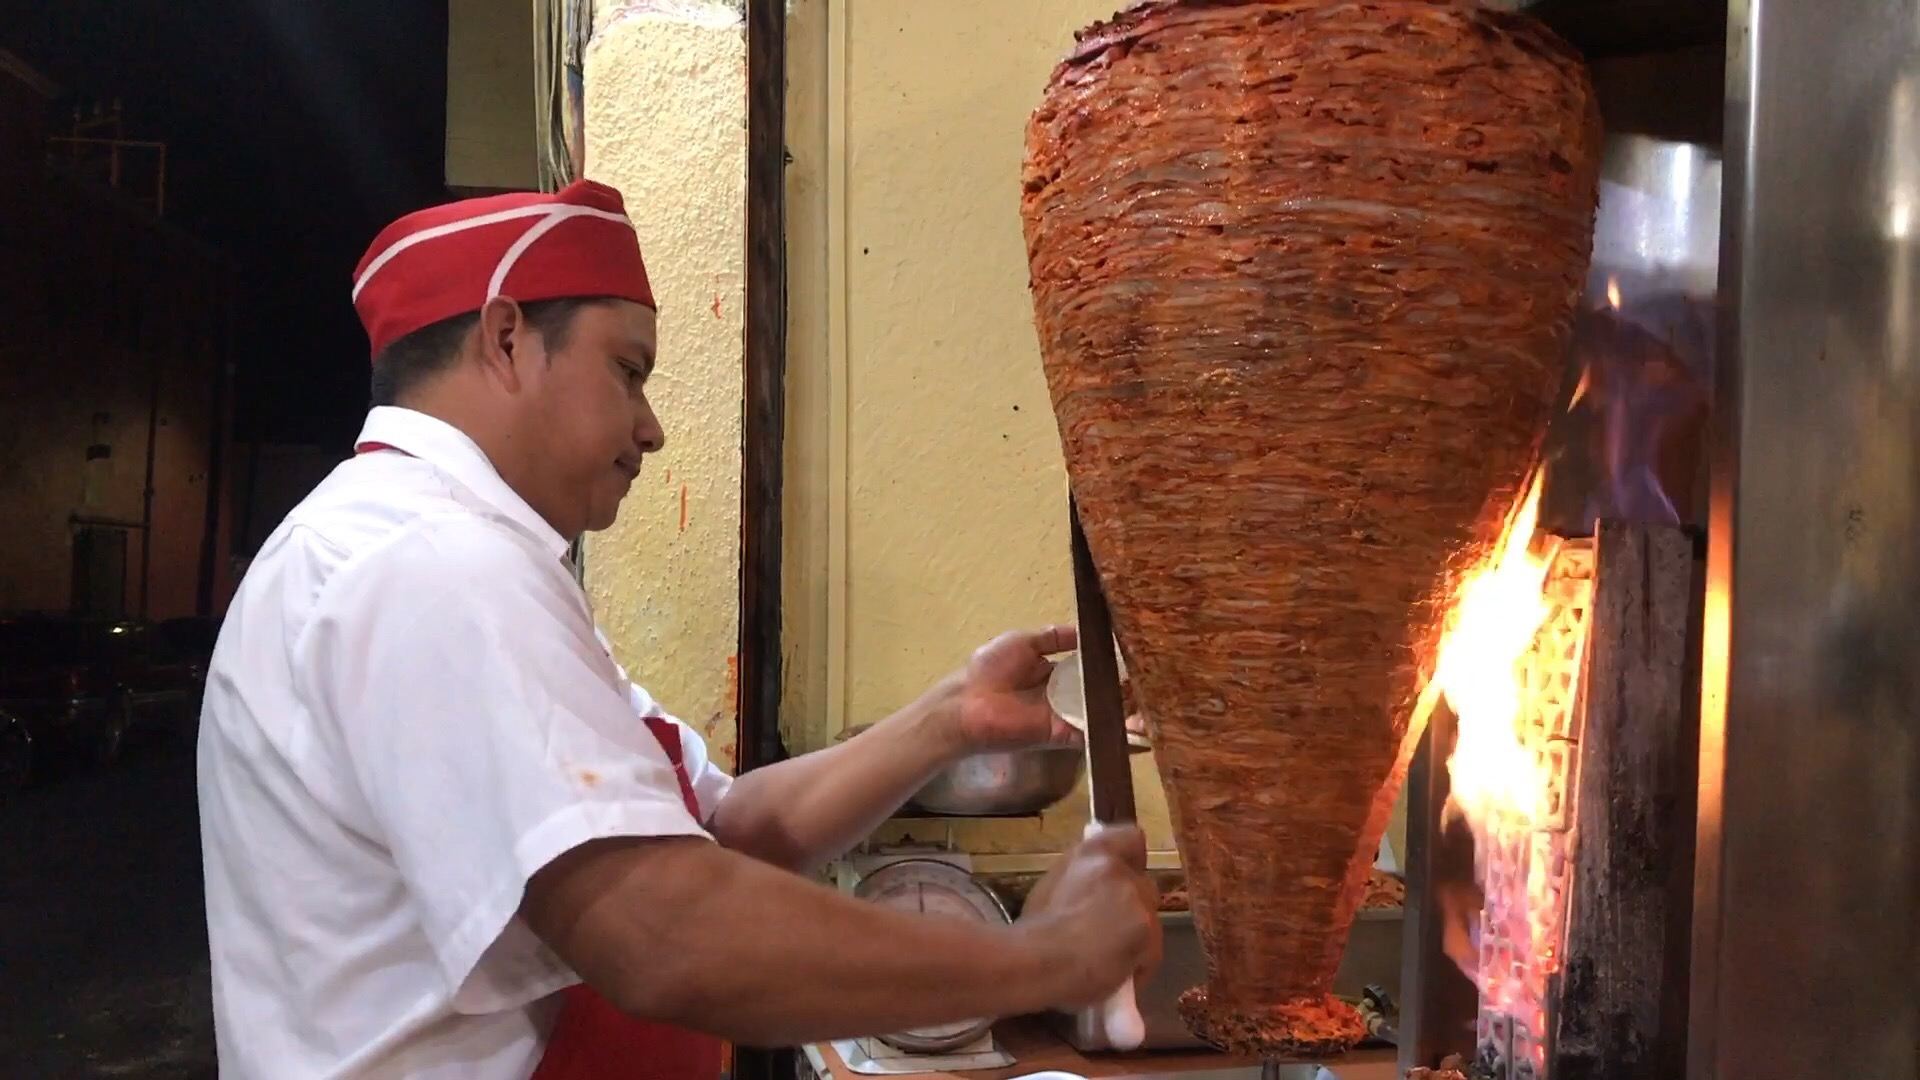 一提起墨西哥美食，最具代表性的就是Taco。卖Taco的店一般开到很晚，是名副其实的深夜食堂。街头巷